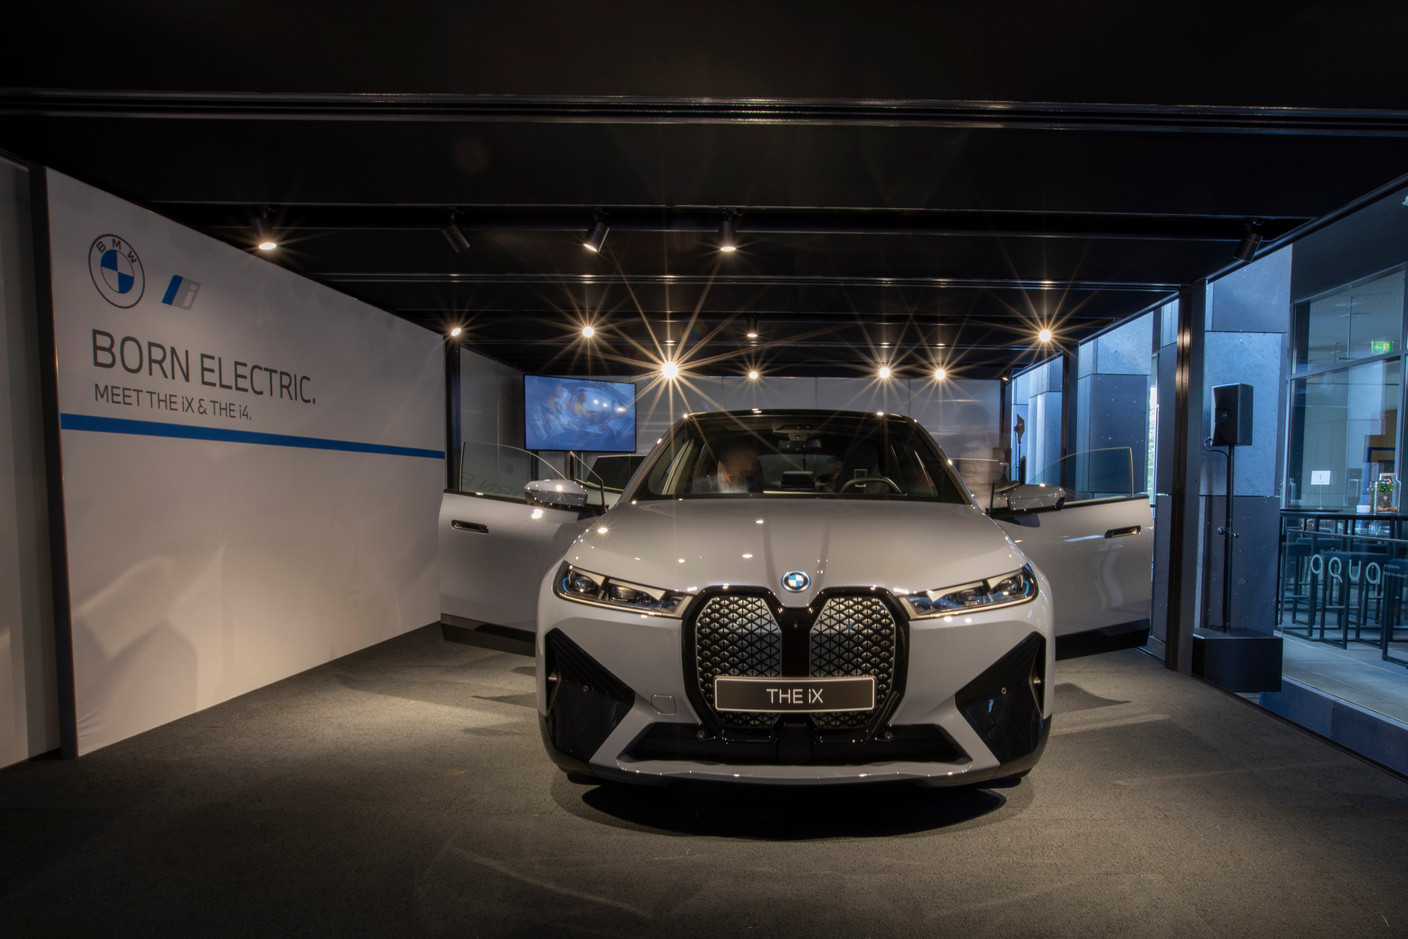 BMW mise gros sur la nouvelle iX, appelée à devenir le fleuron de sa gamme électrique. (Photo: BMW/Diana Sellier)